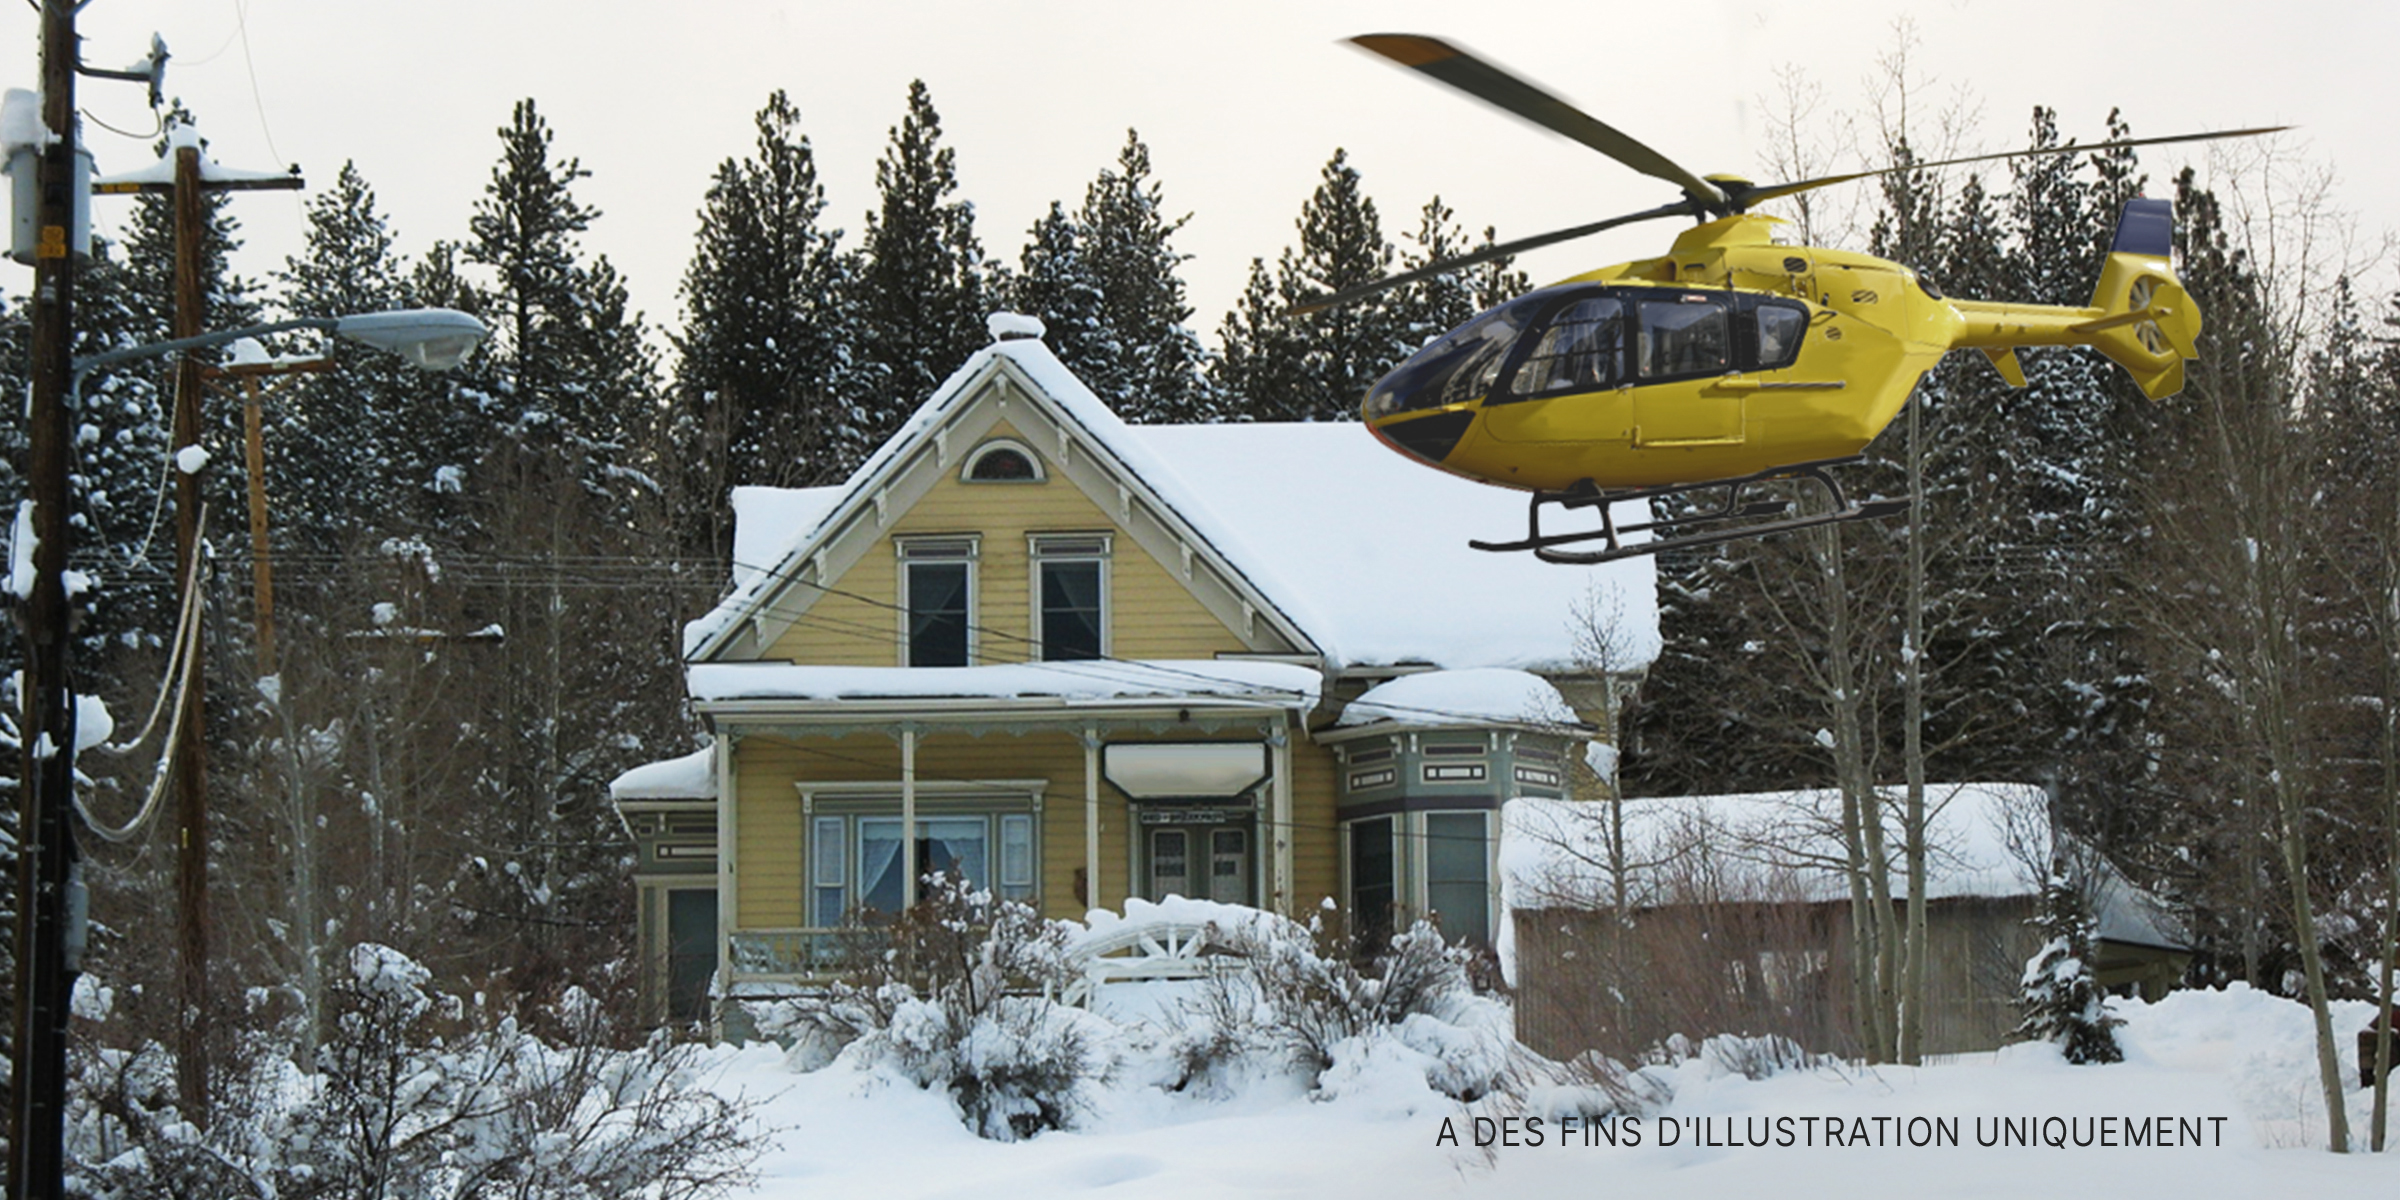 L'atterrissage d'un hélicoptère près d'une maison. | Source : Flickr/teofilo (CC BY 2.0)&Shutterstock Flickr/teofilo (CC BY 2.0)&Shutterstock